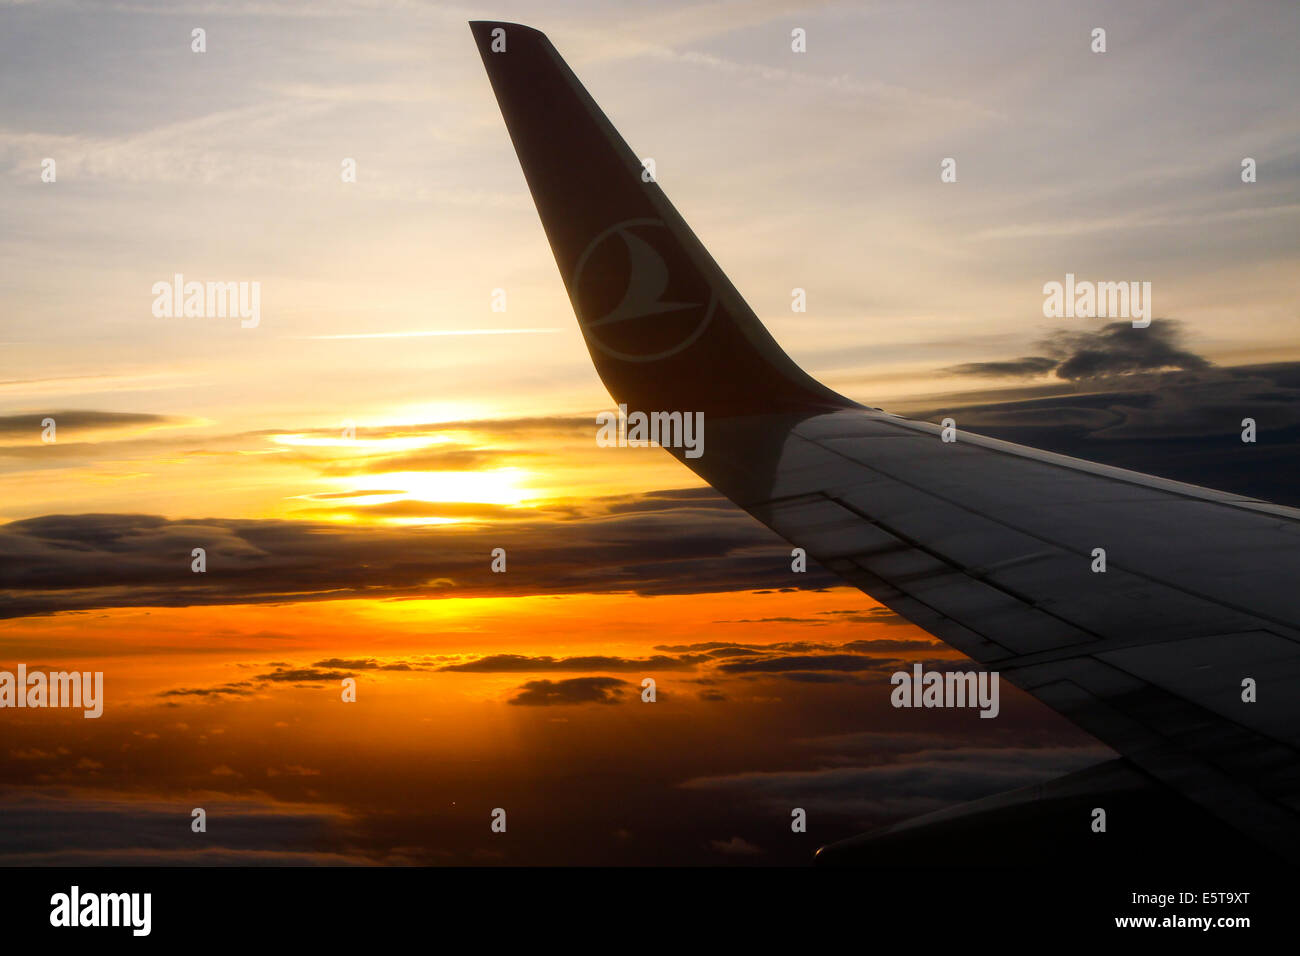 Die Sonne beginnt zu setzen, da wir in Manchester Flughafen, an Bord von Turkish Airlines Boeing 737-800 steigen. Stockfoto